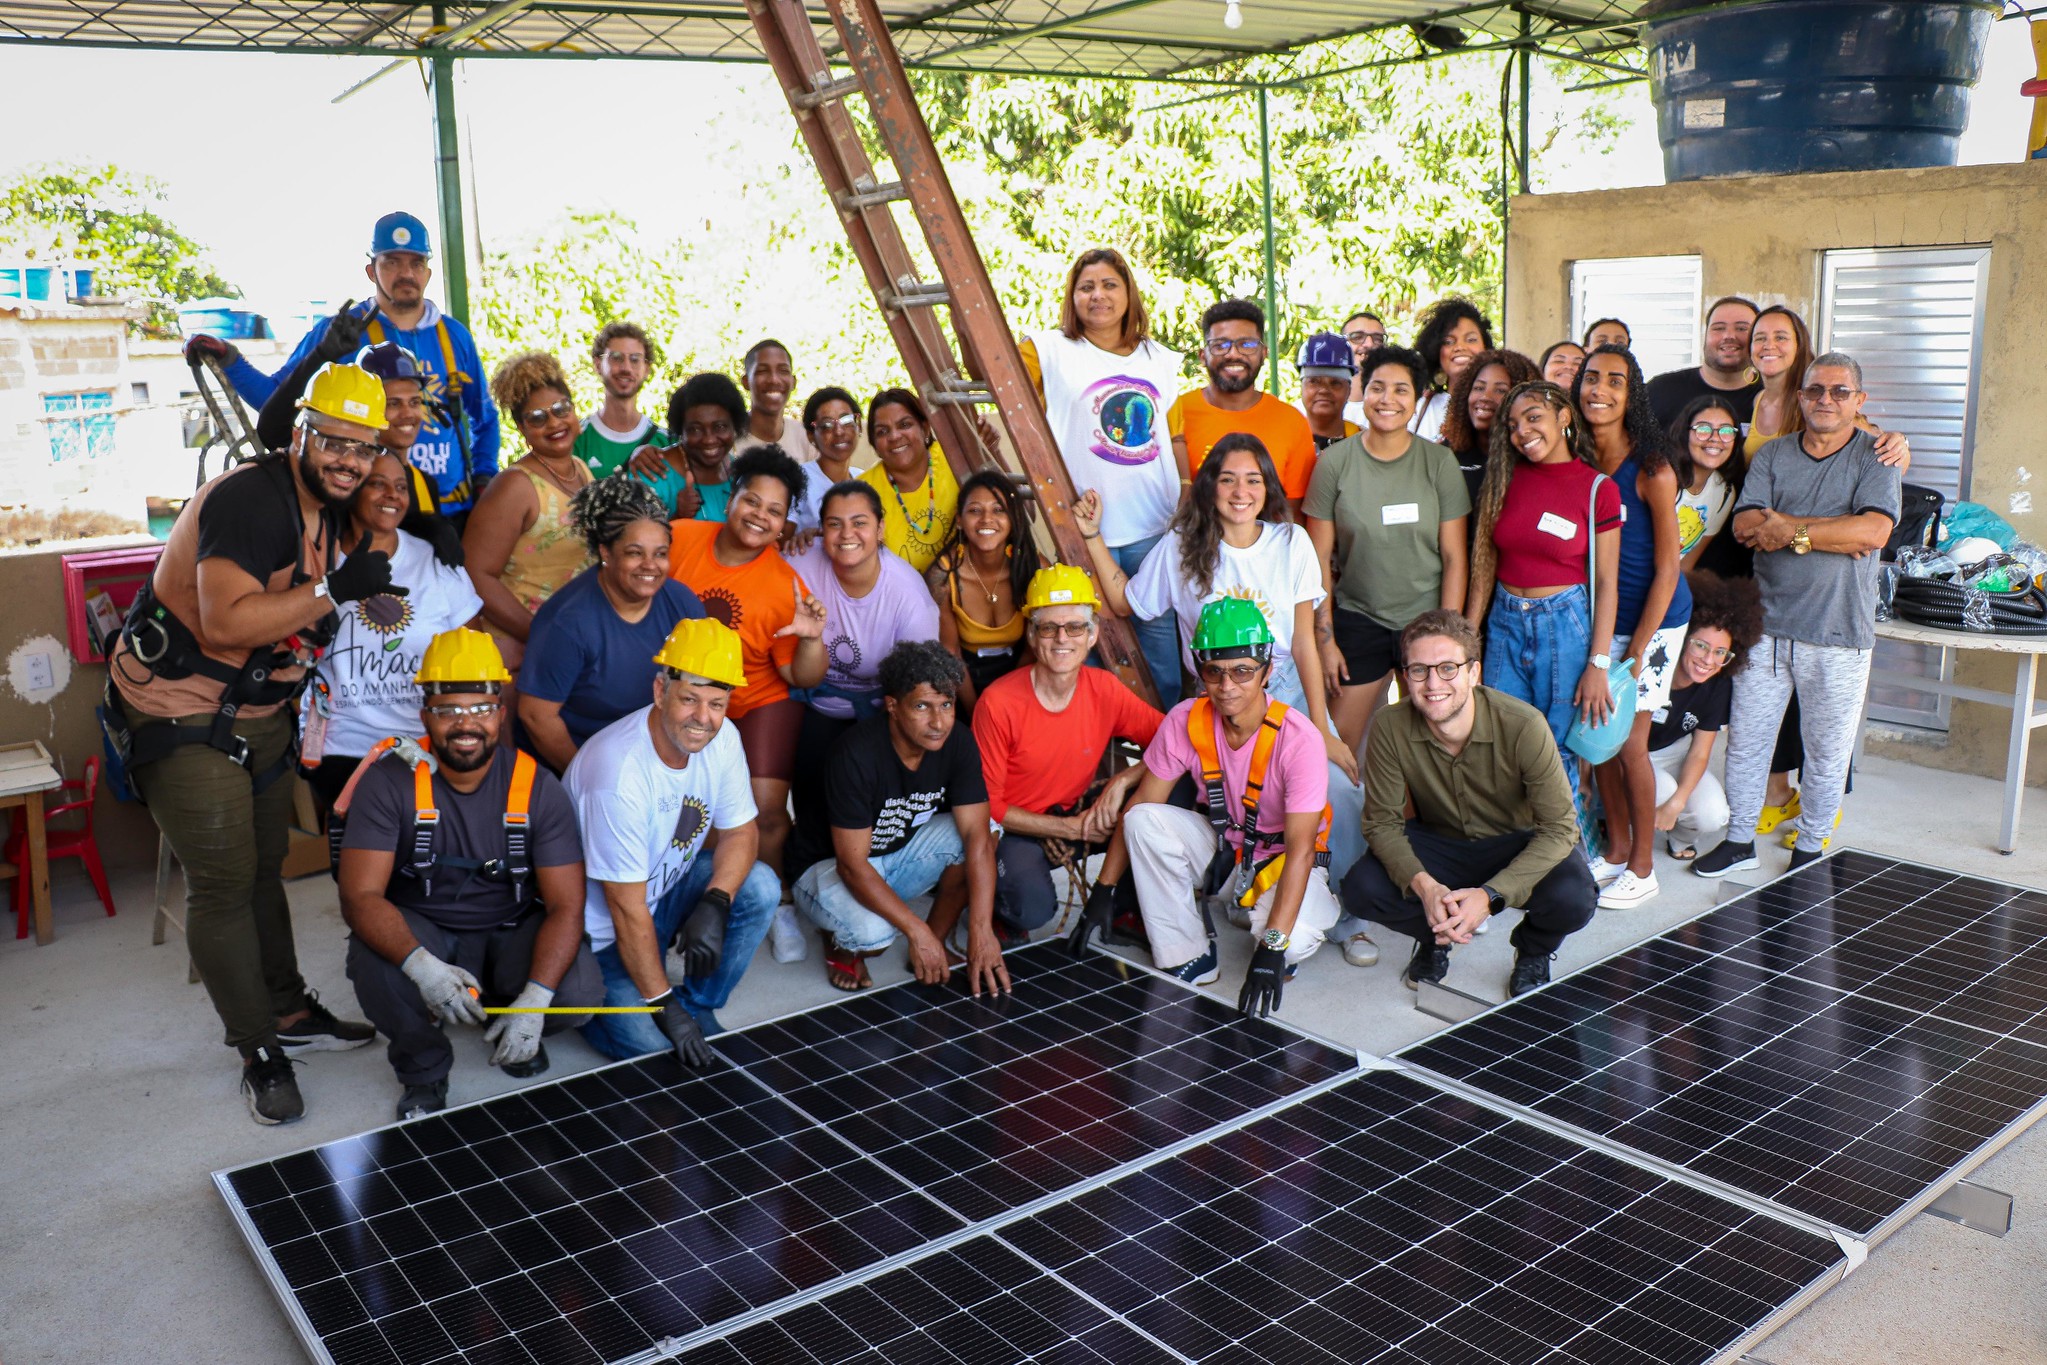 Instalação do sistema fotovoltaico foi comemorada pela comunidade. Foto: Alexandre Cerqueira/ComCat